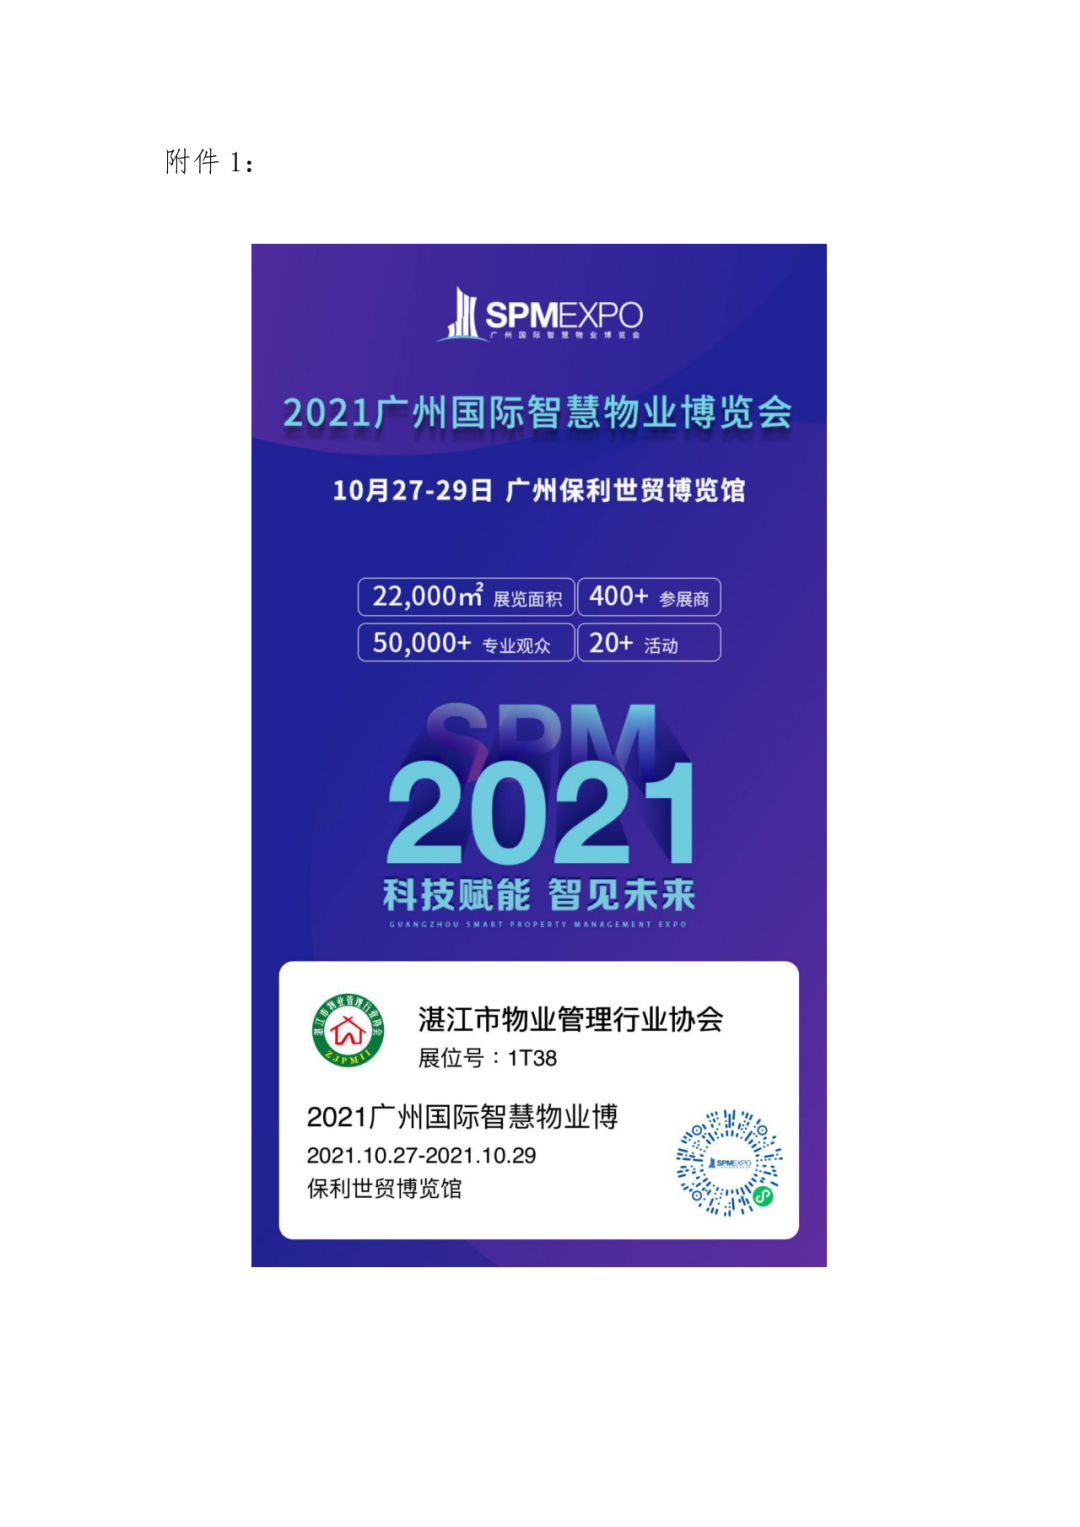 关于“2021广州国际智慧物业博览会”参会的通知